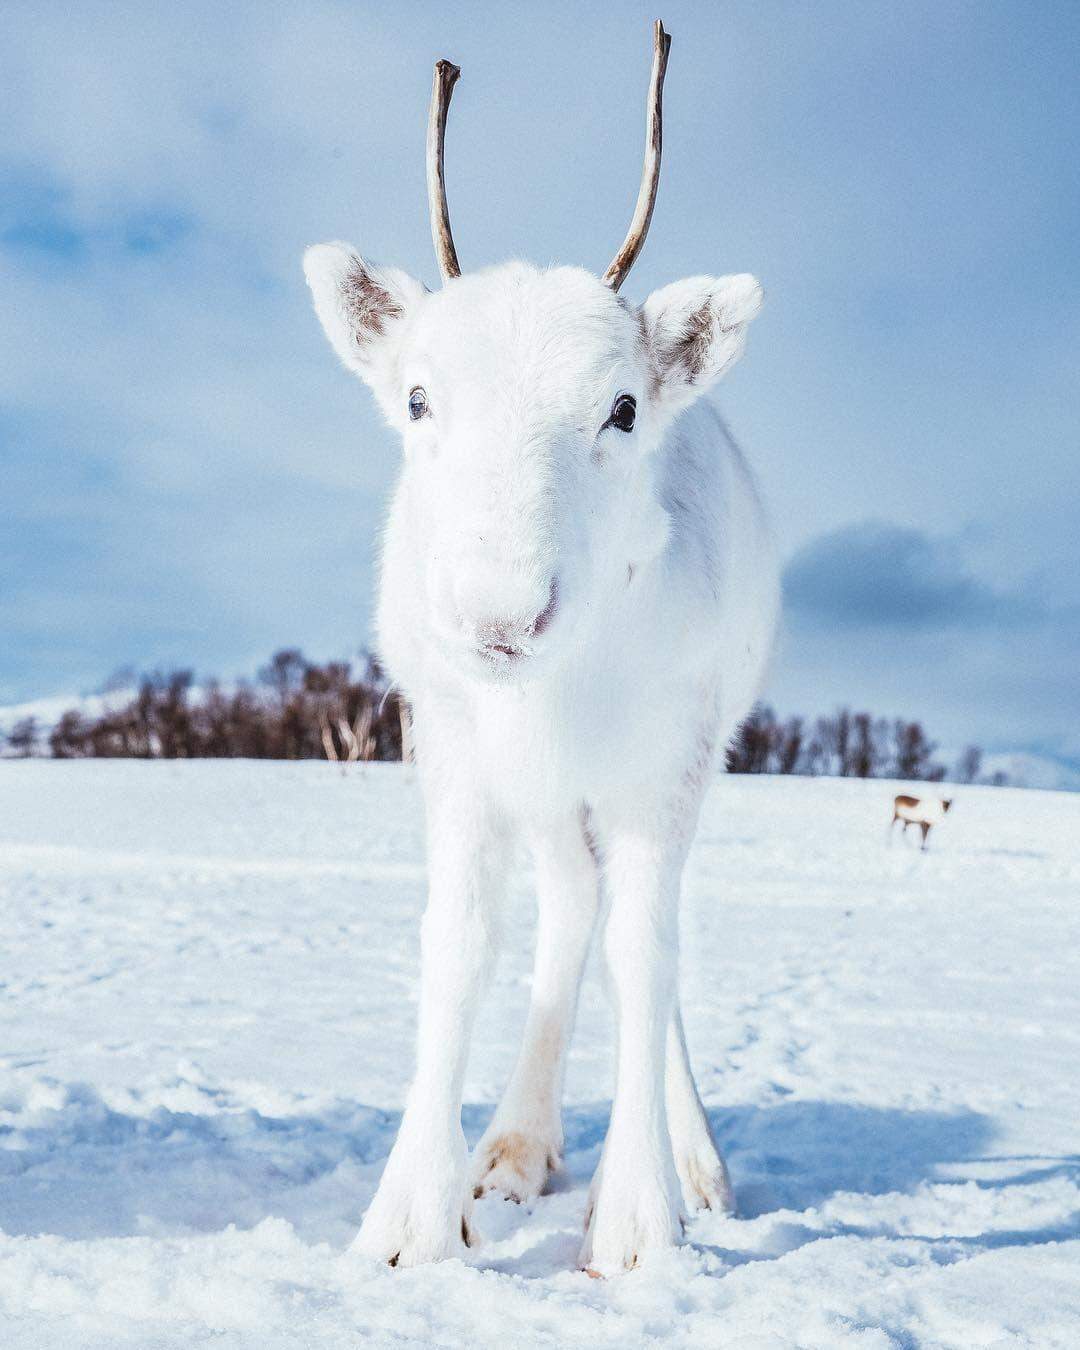 Filhote raro de rena branca é fotografado 'camuflado' na neve na Noruega.